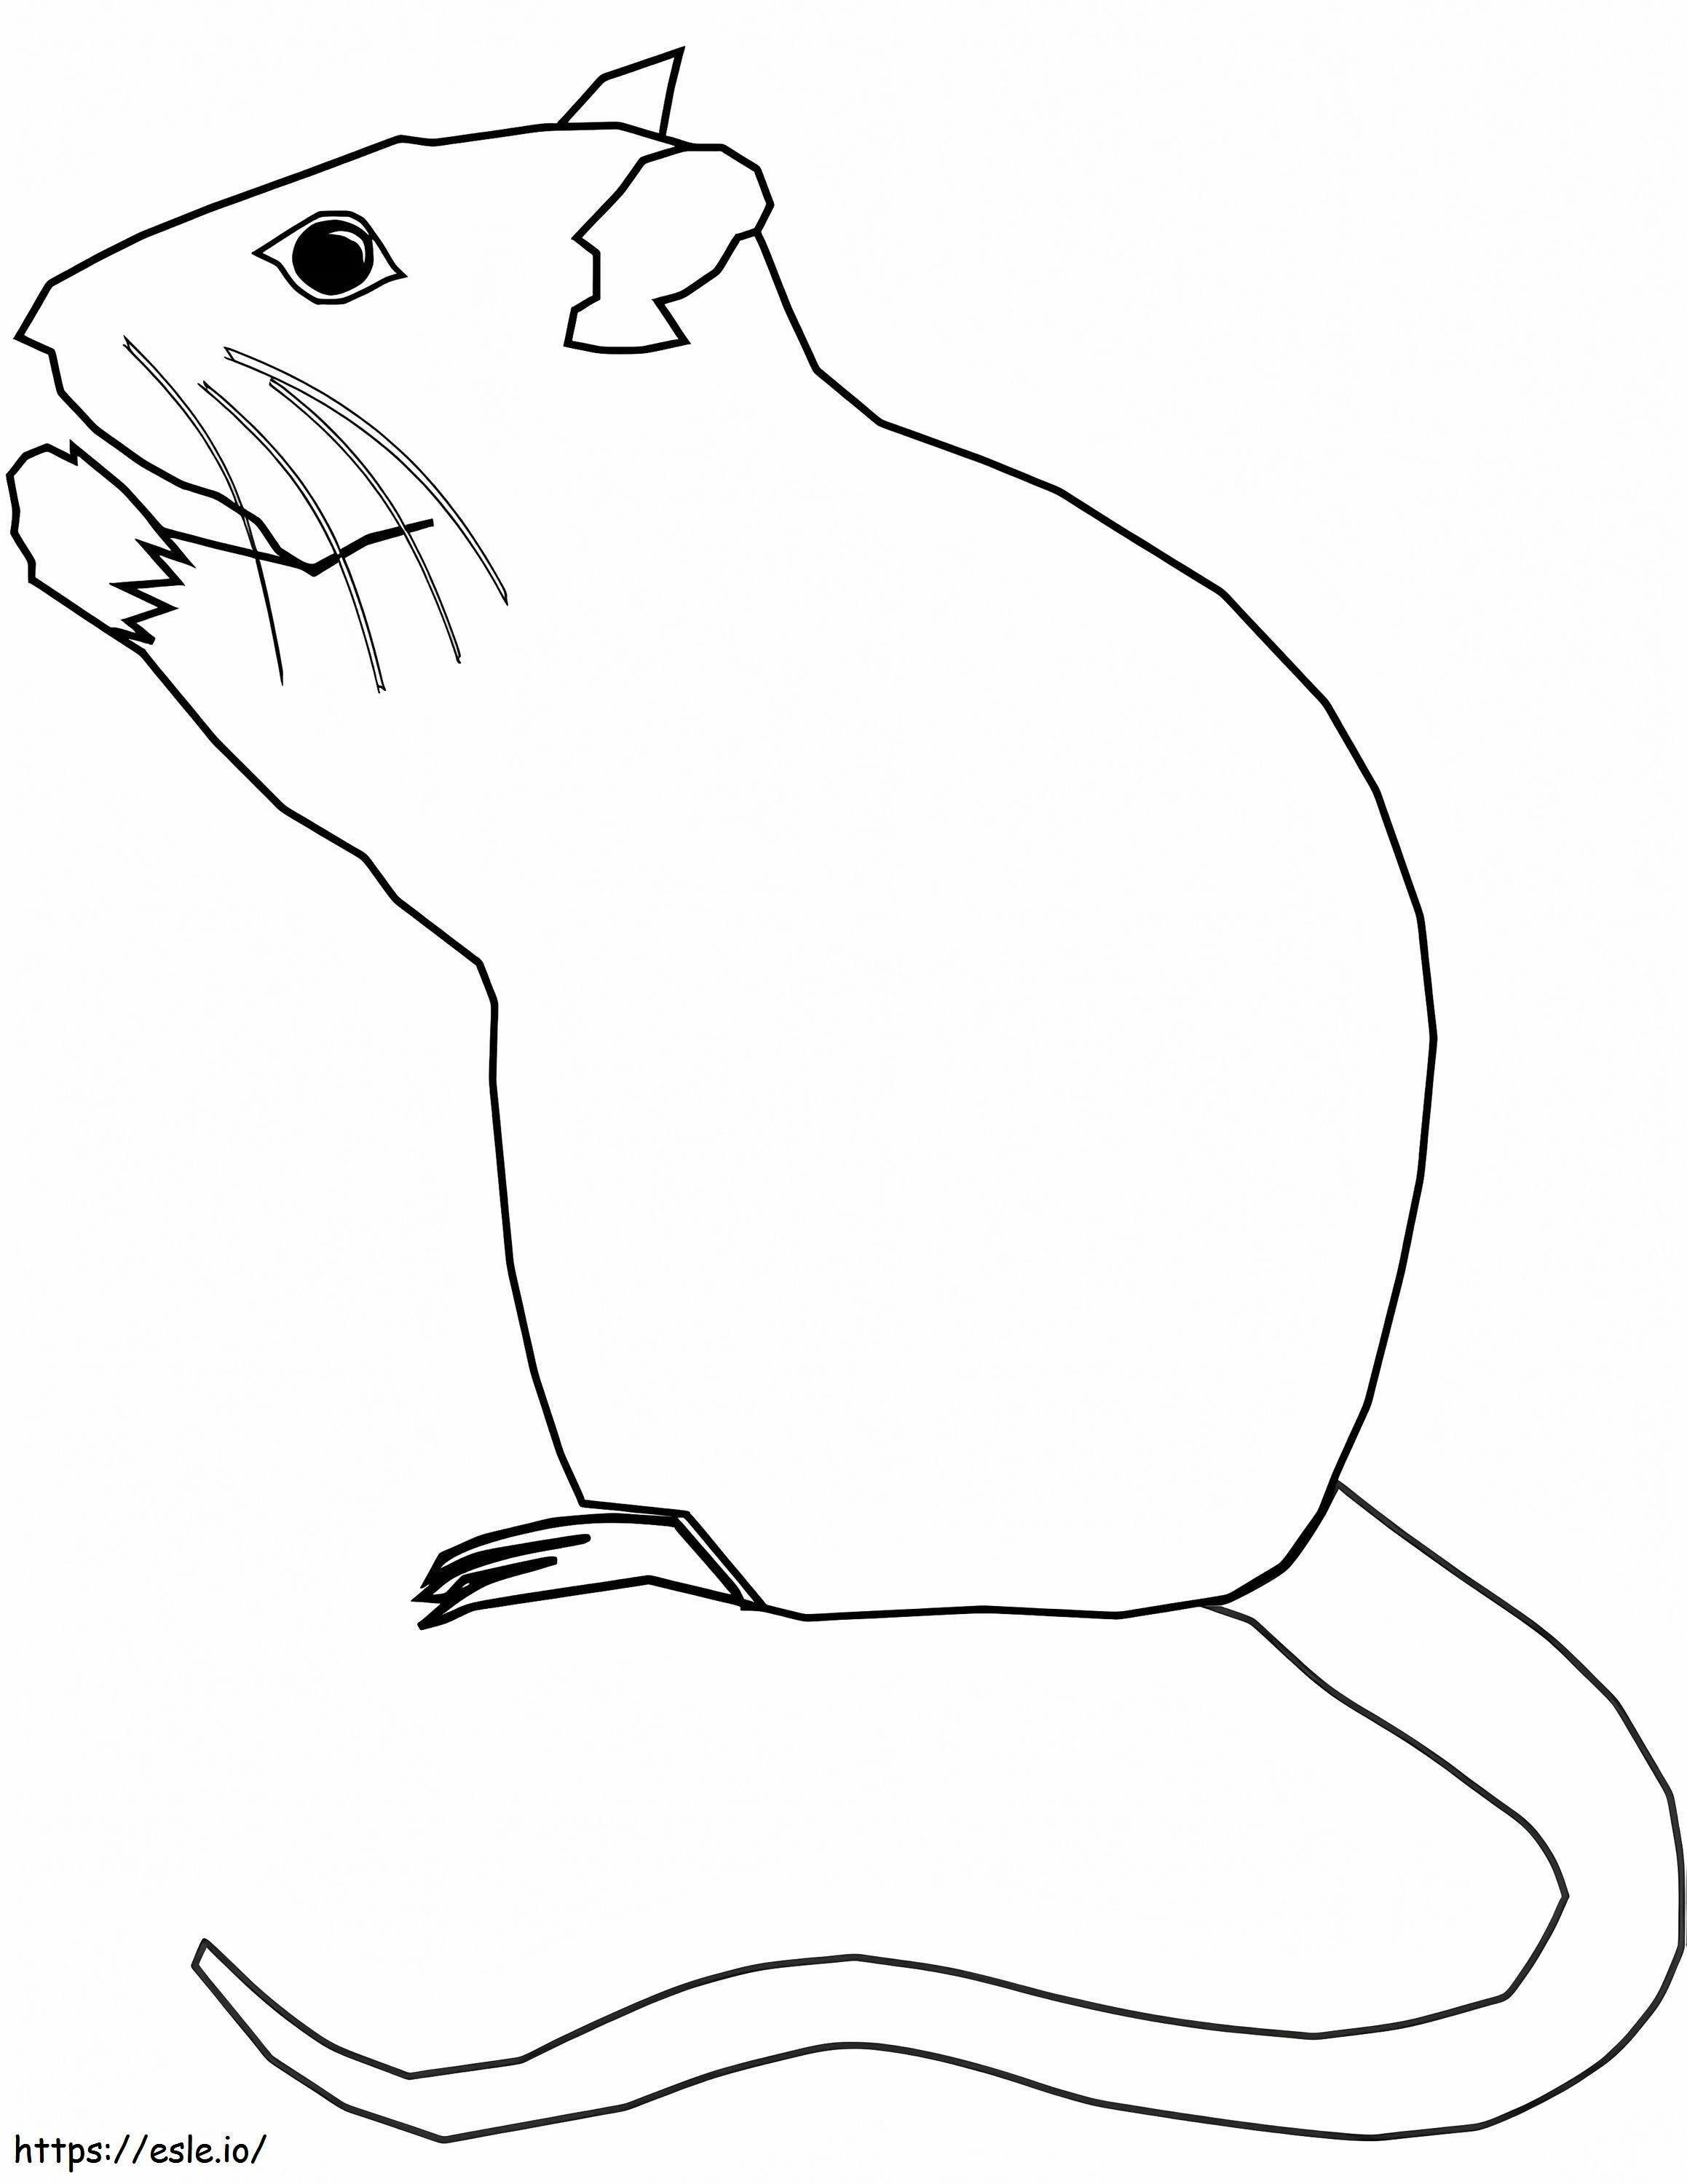 Coloriage Rat simple à imprimer dessin